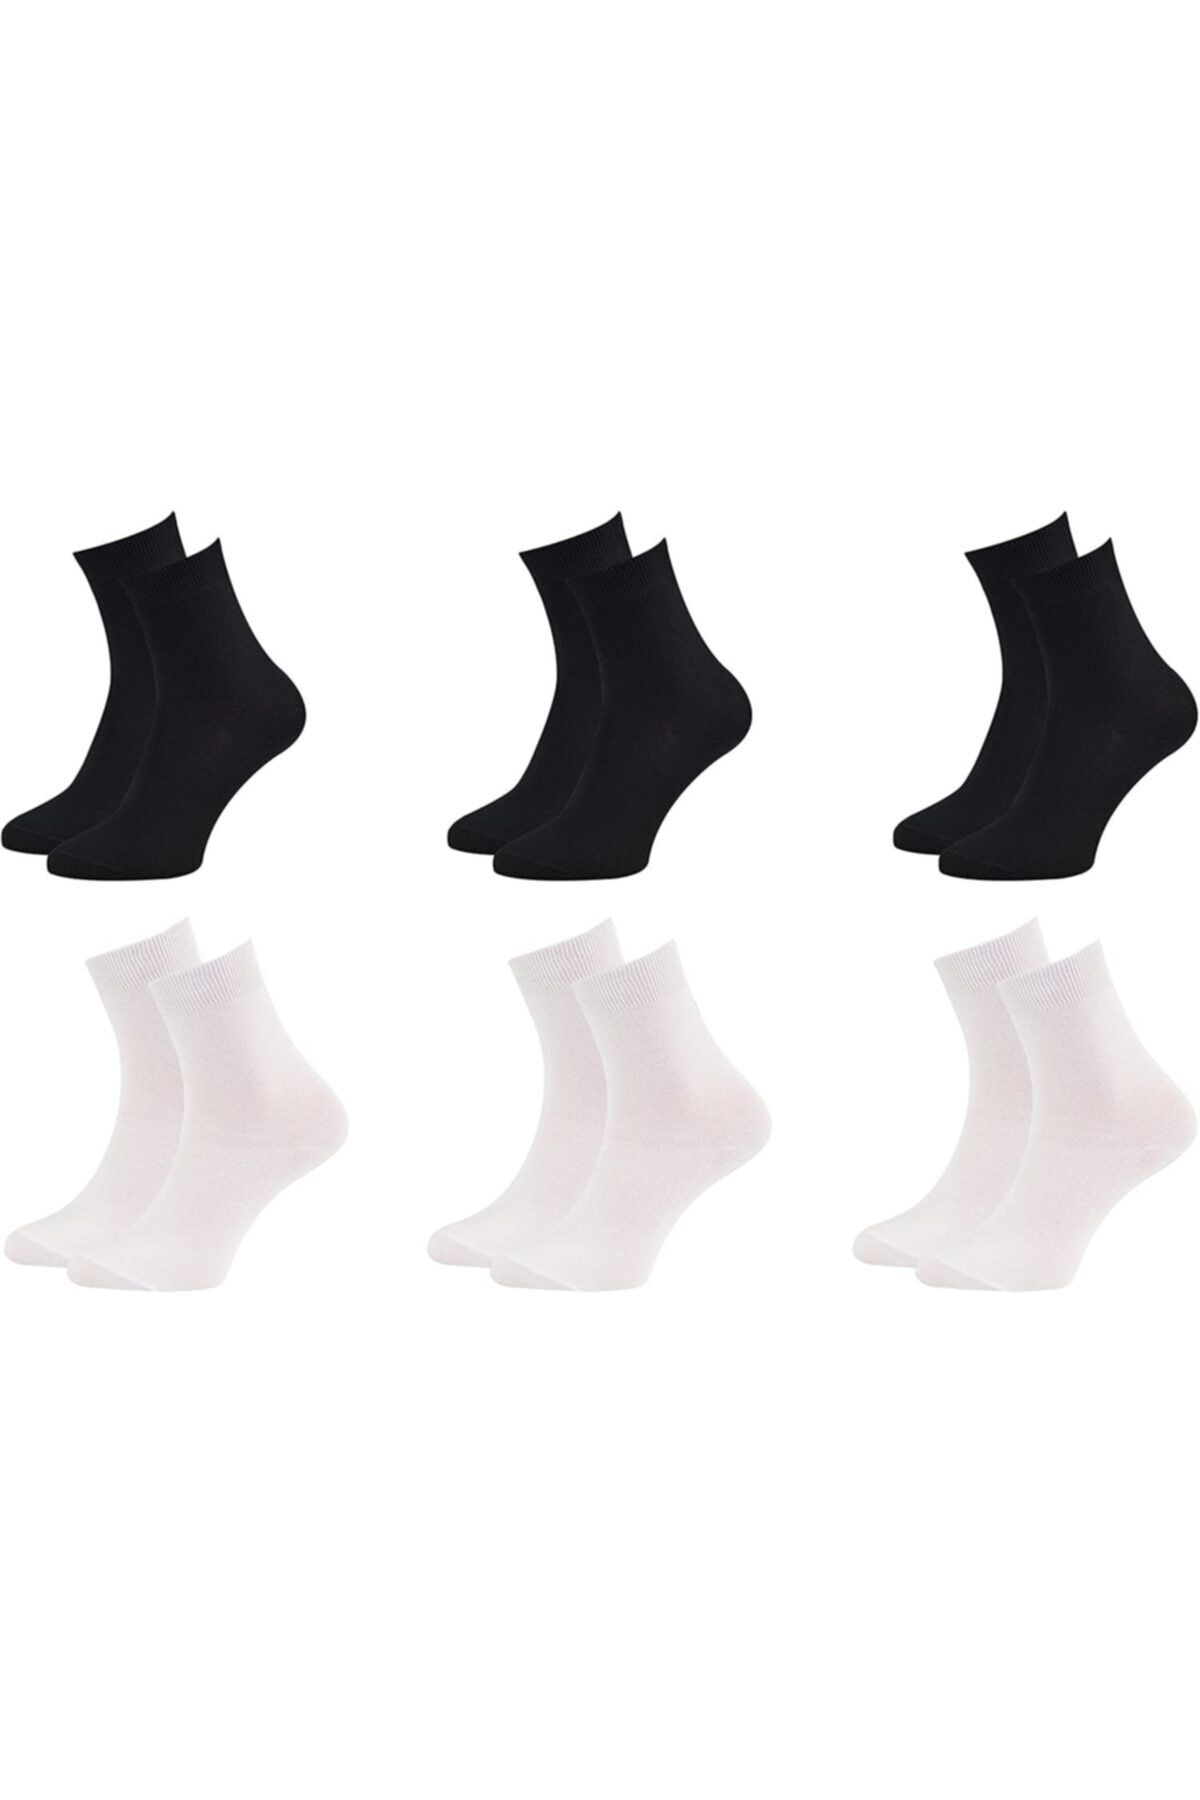 SOCKSHION Kadın Siyah Ve Beyaz 6'lı Bambu Dikişsiz Premium Soket Çorap